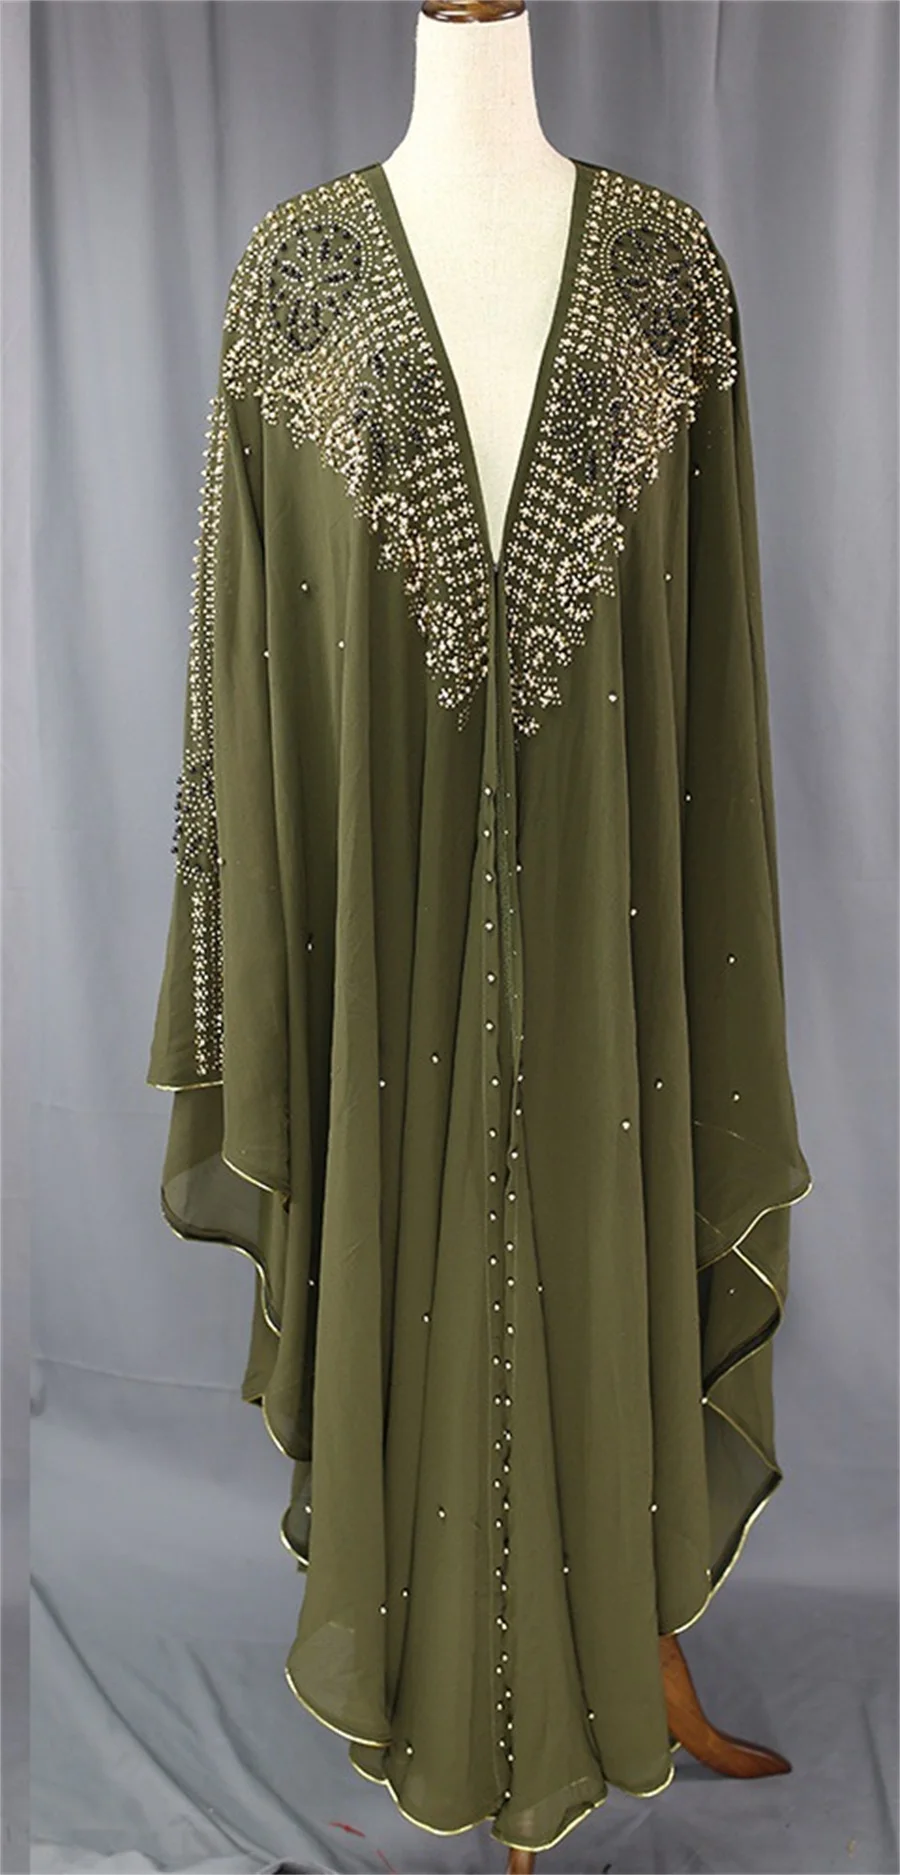 Siskakia размера плюс Jalabiya Dashiki платья для женщин алмазные бусины африканская одежда Дубай abaya мусульманские Вечерние халаты с капюшоном